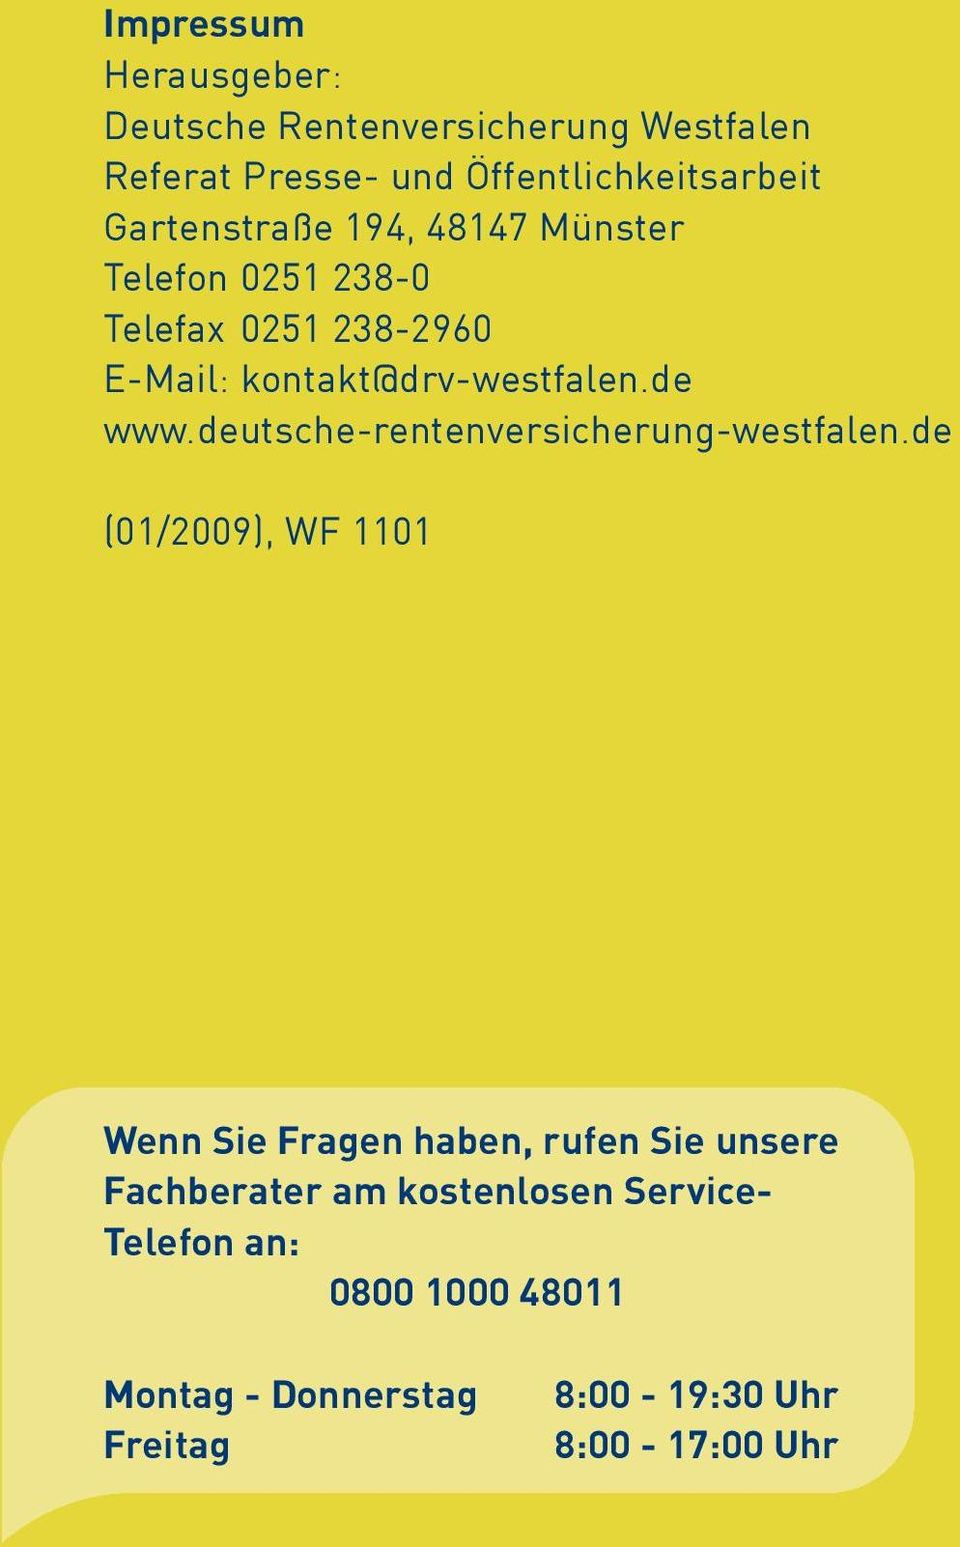 de www.deutsche-rentenversicherung-westfalen.